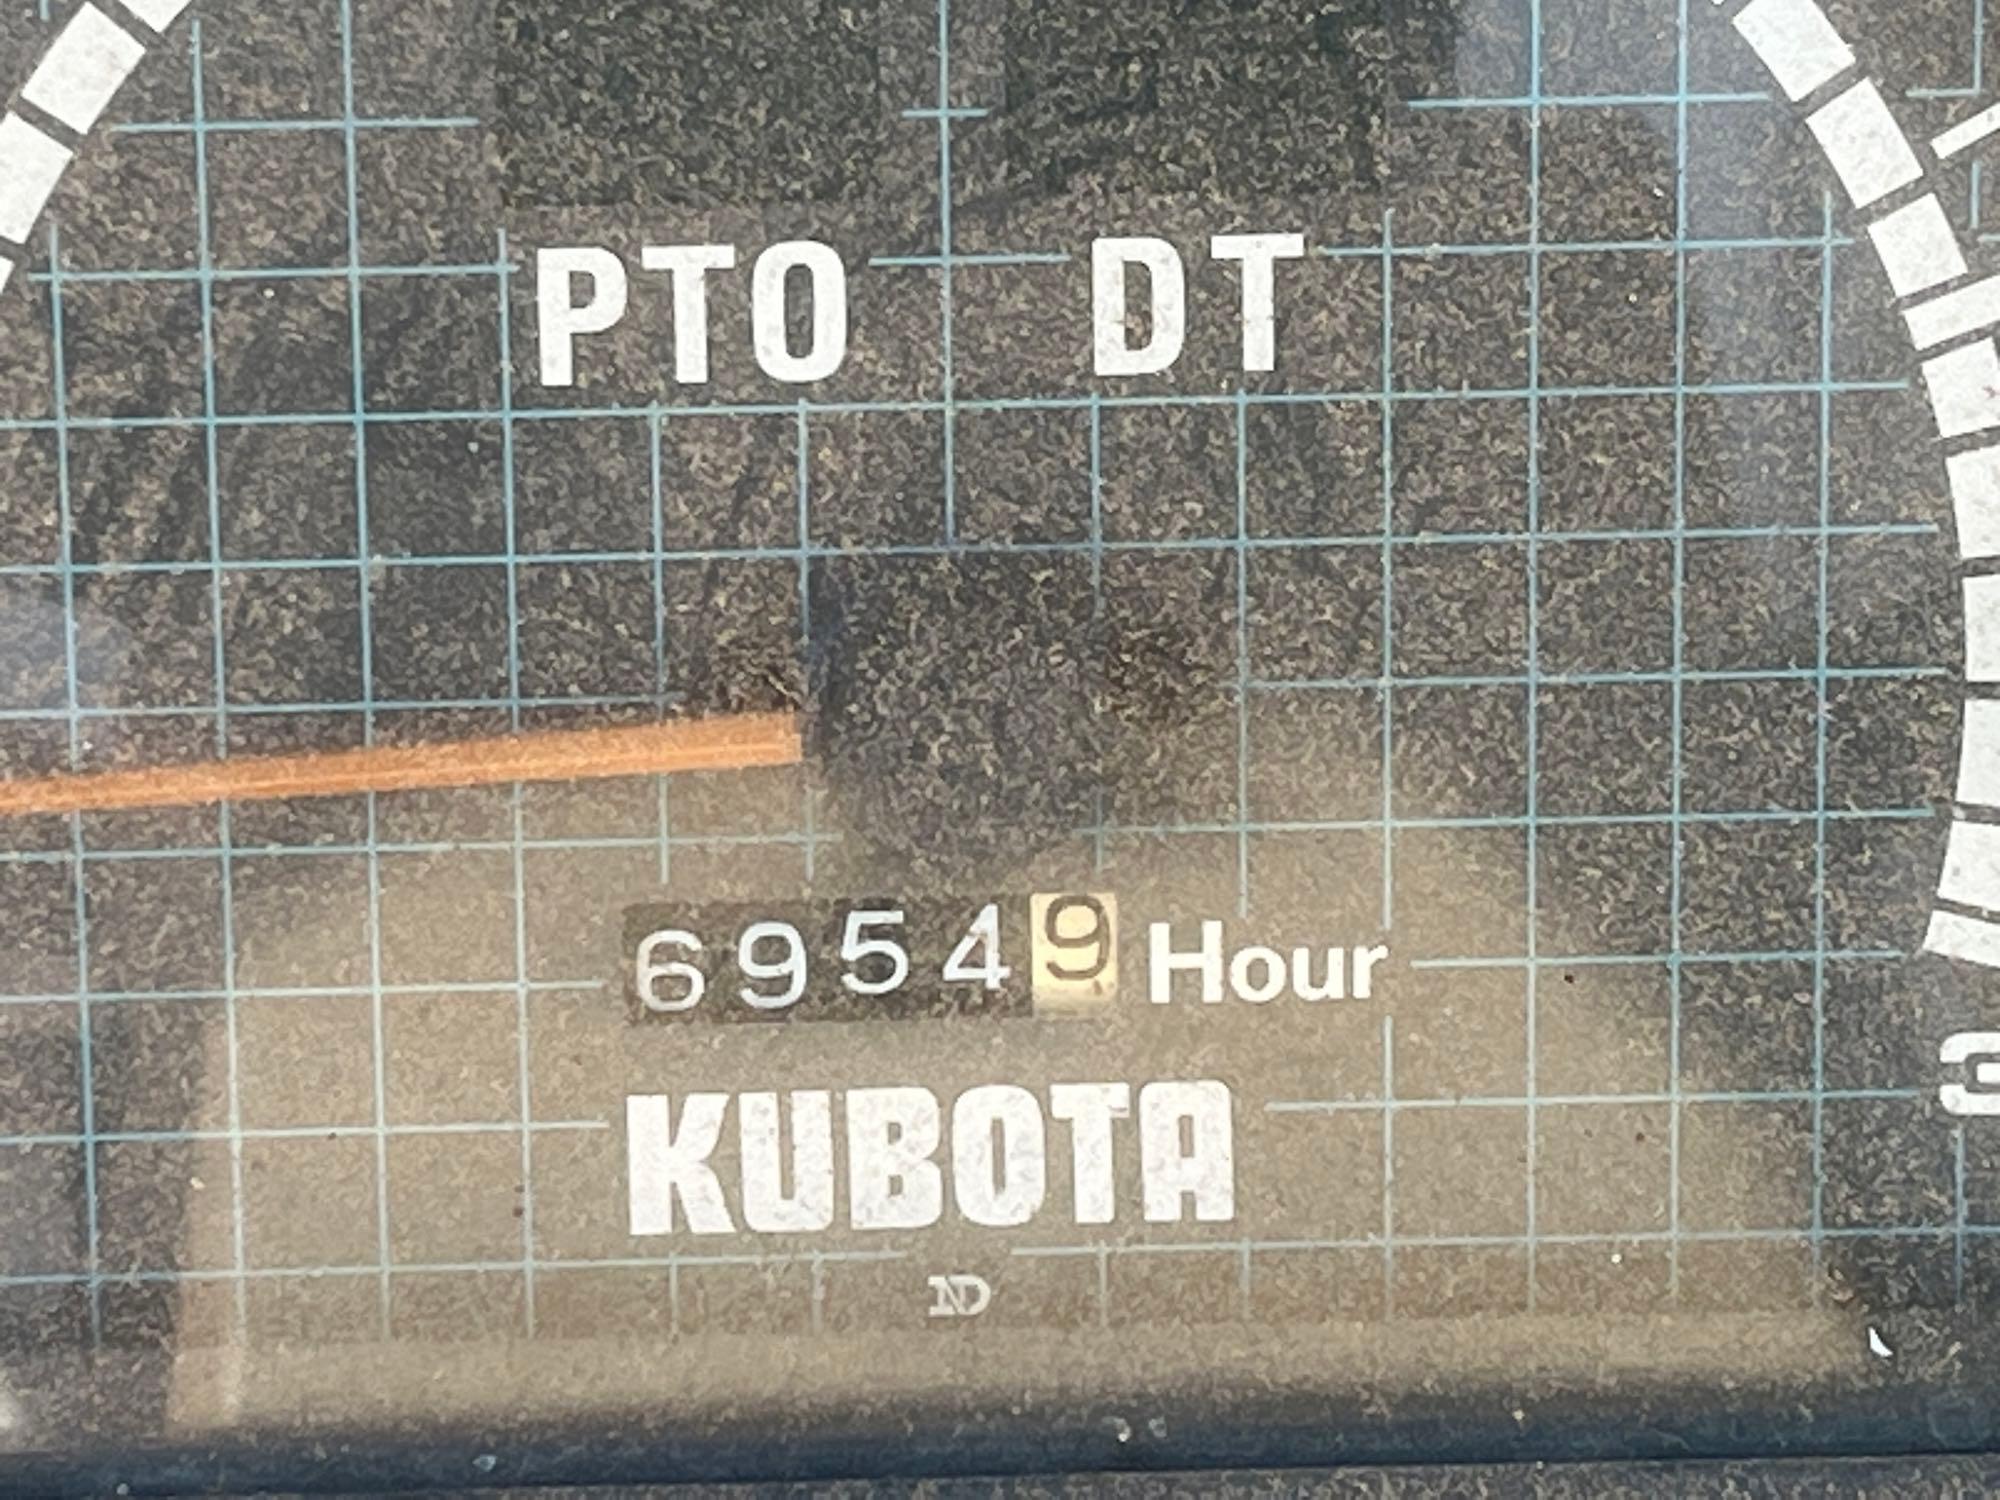 KUBOTA M8950 DT TRACTOR